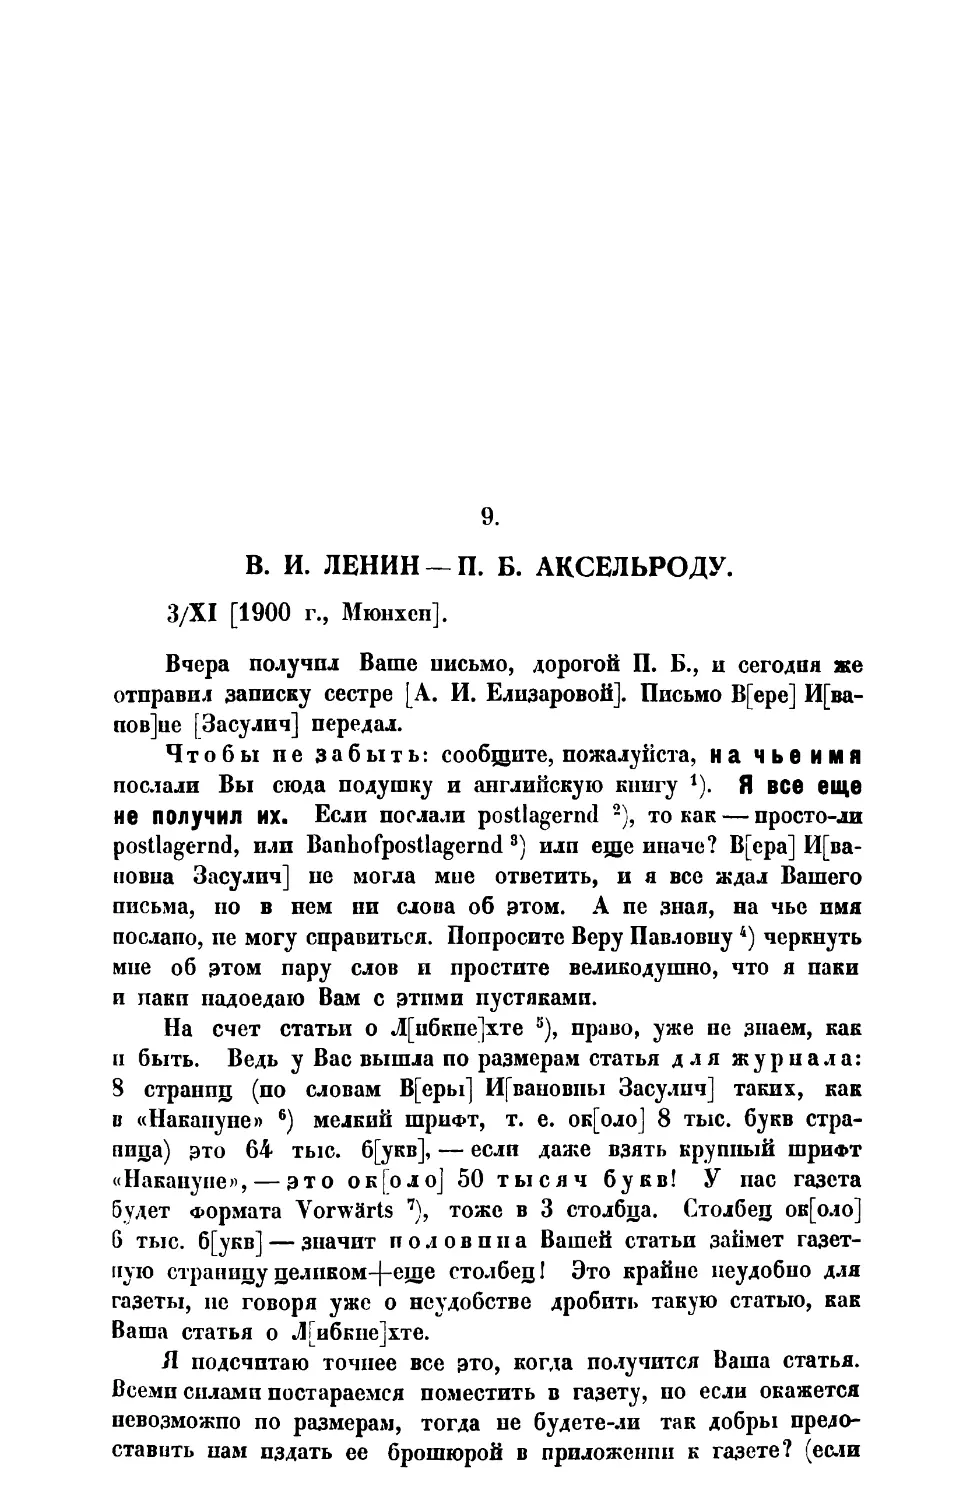 9. В. И. Ленин. — Письмо П. Б. Аксельроду от 3 XI 1900 г.